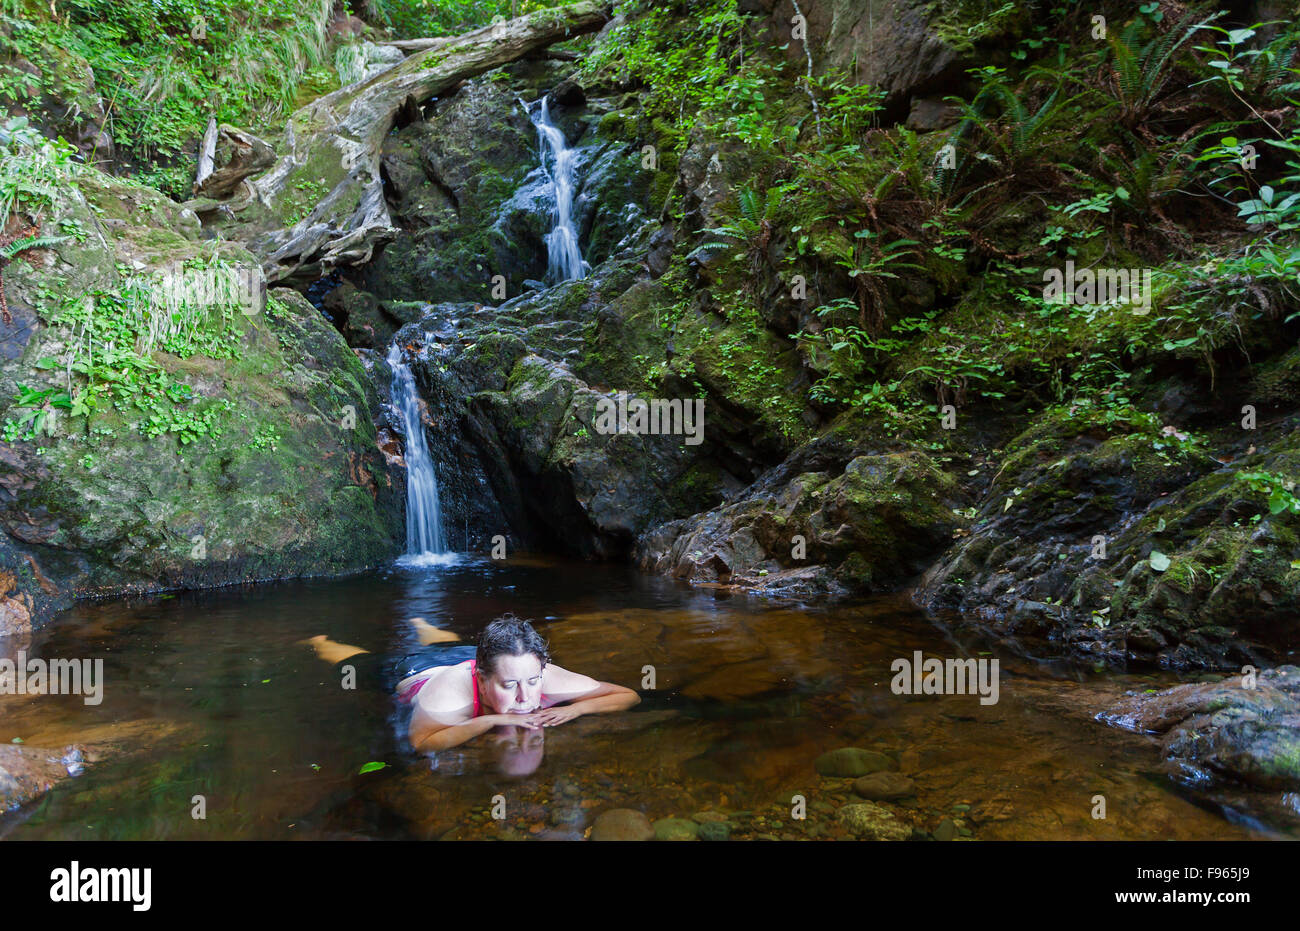 Une femme mature se détend dans une piscine d'eau douce après une randonnée  dans la baie San Josef. La baie San Josef,l'île de Vancouver, Colombie  Britannique Photo Stock - Alamy